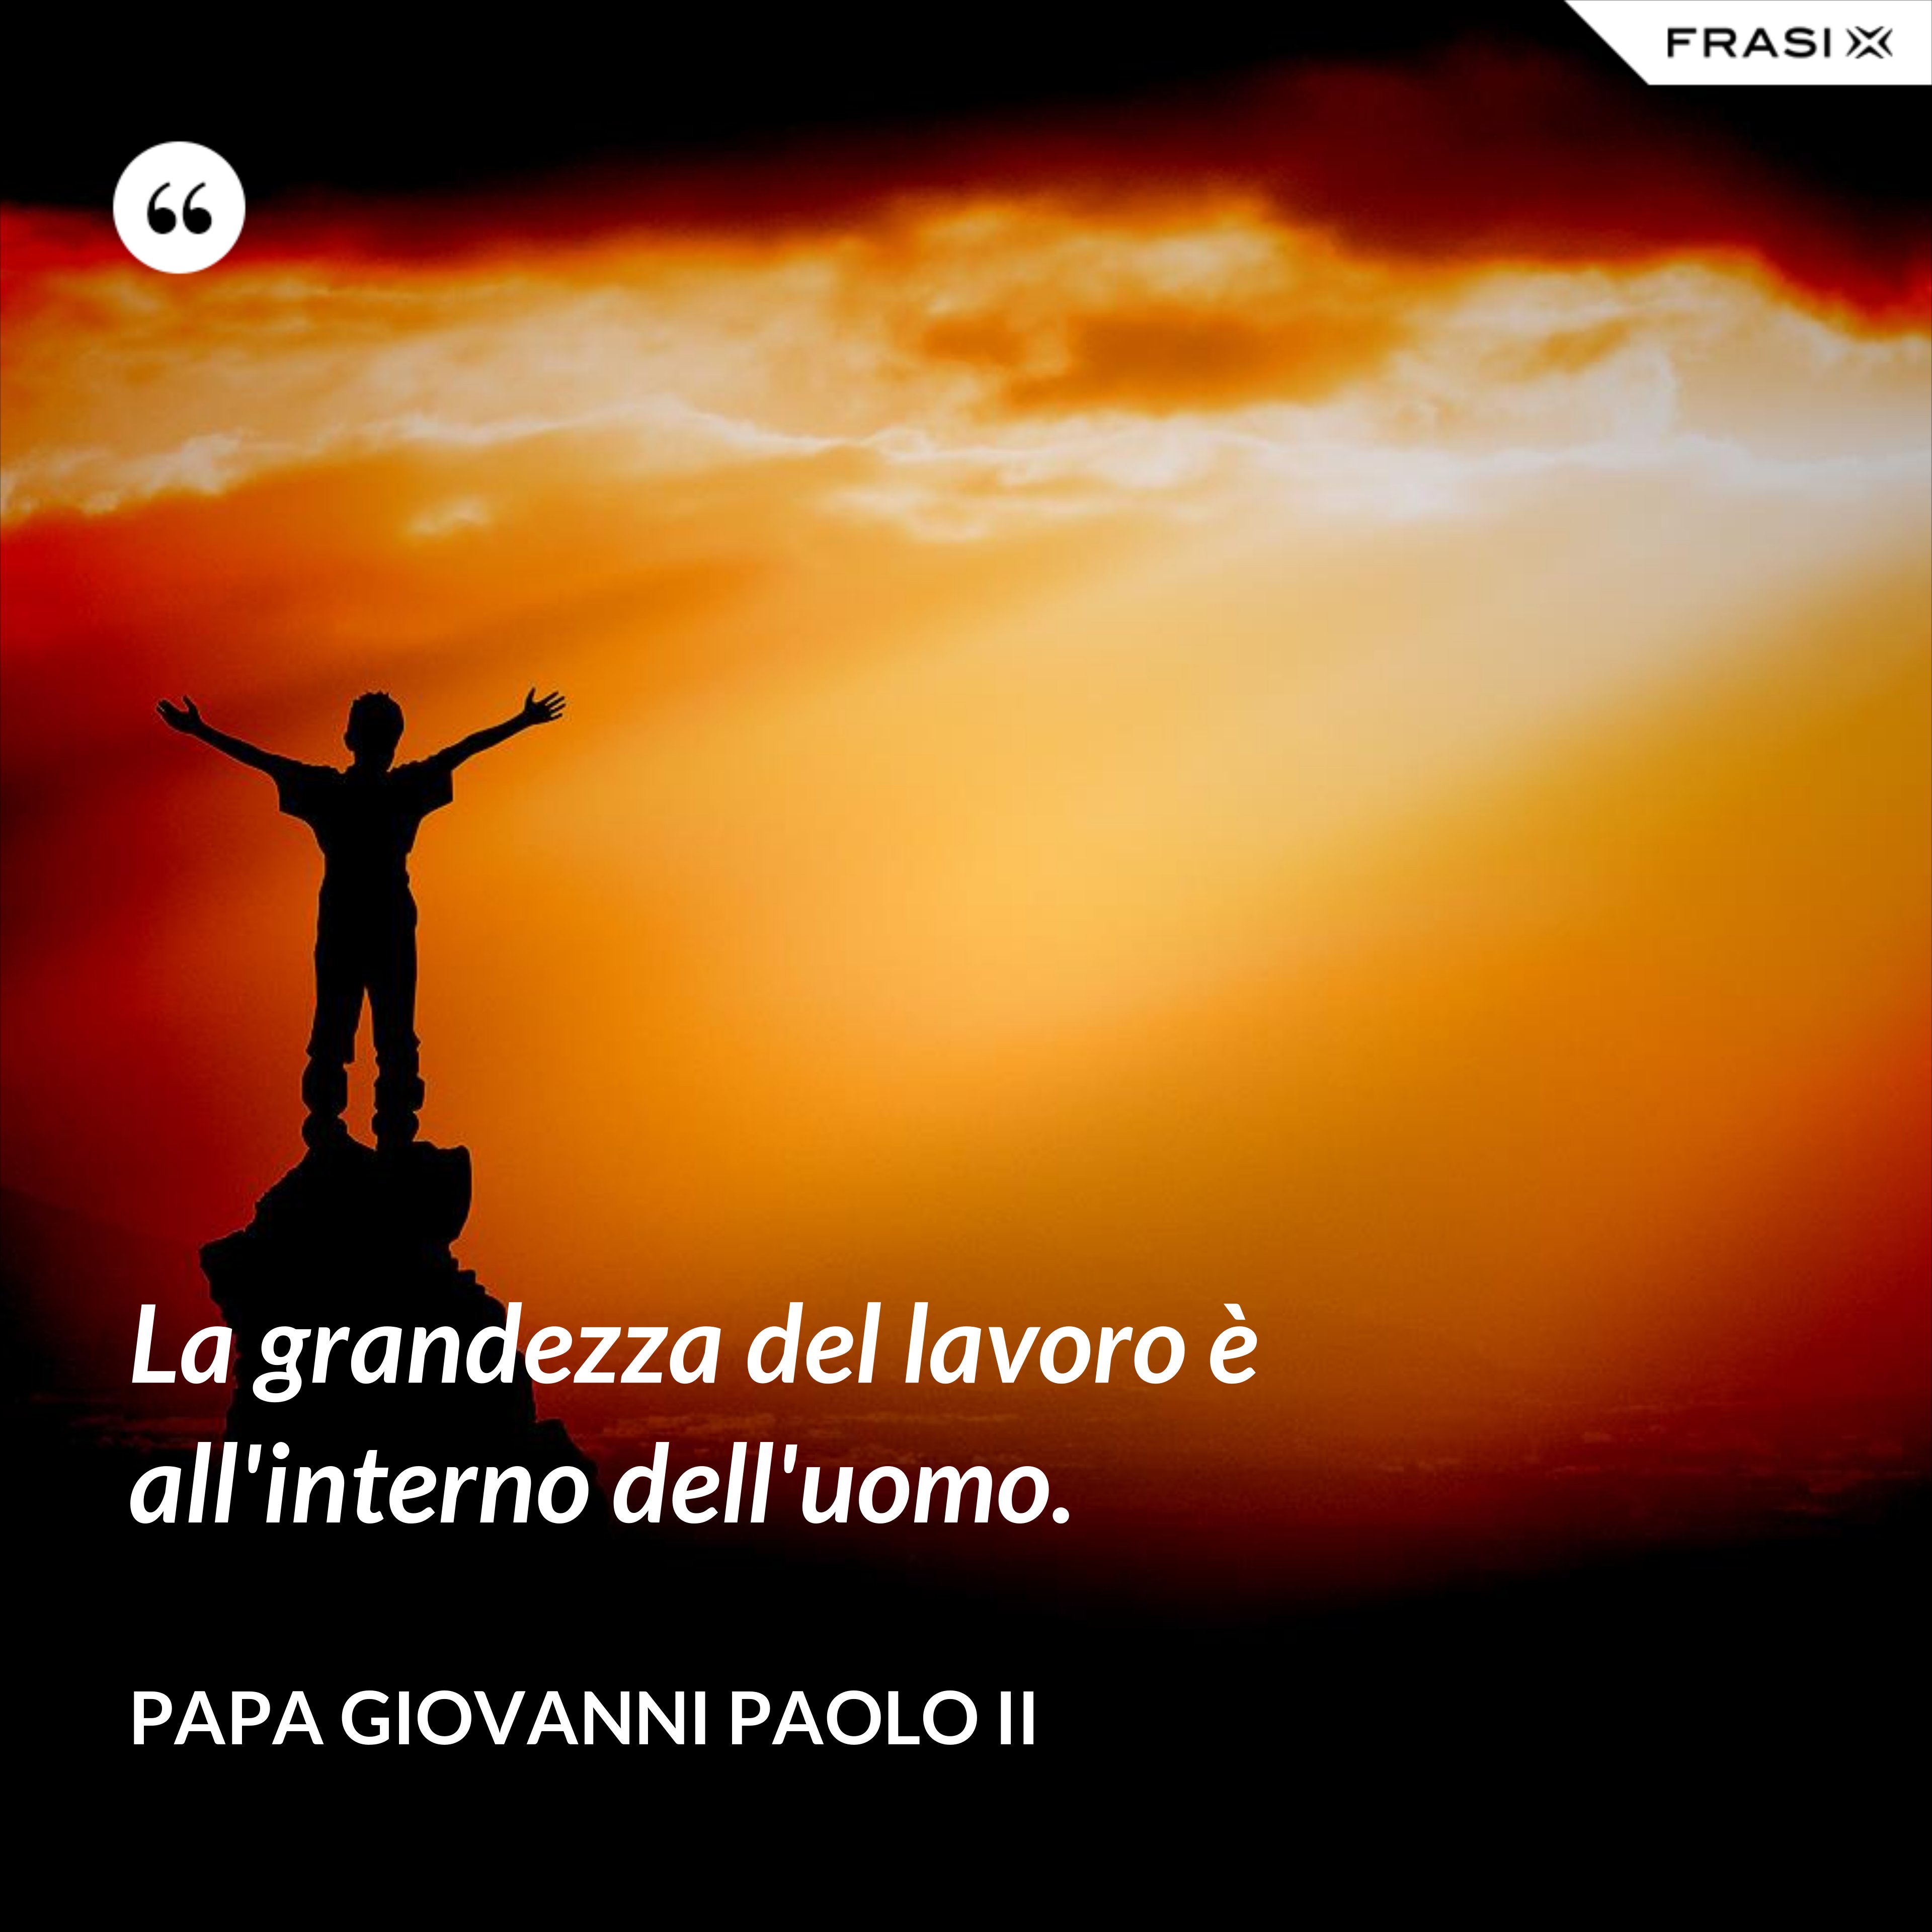 La grandezza del lavoro è all'interno dell'uomo. - Papa Giovanni Paolo II